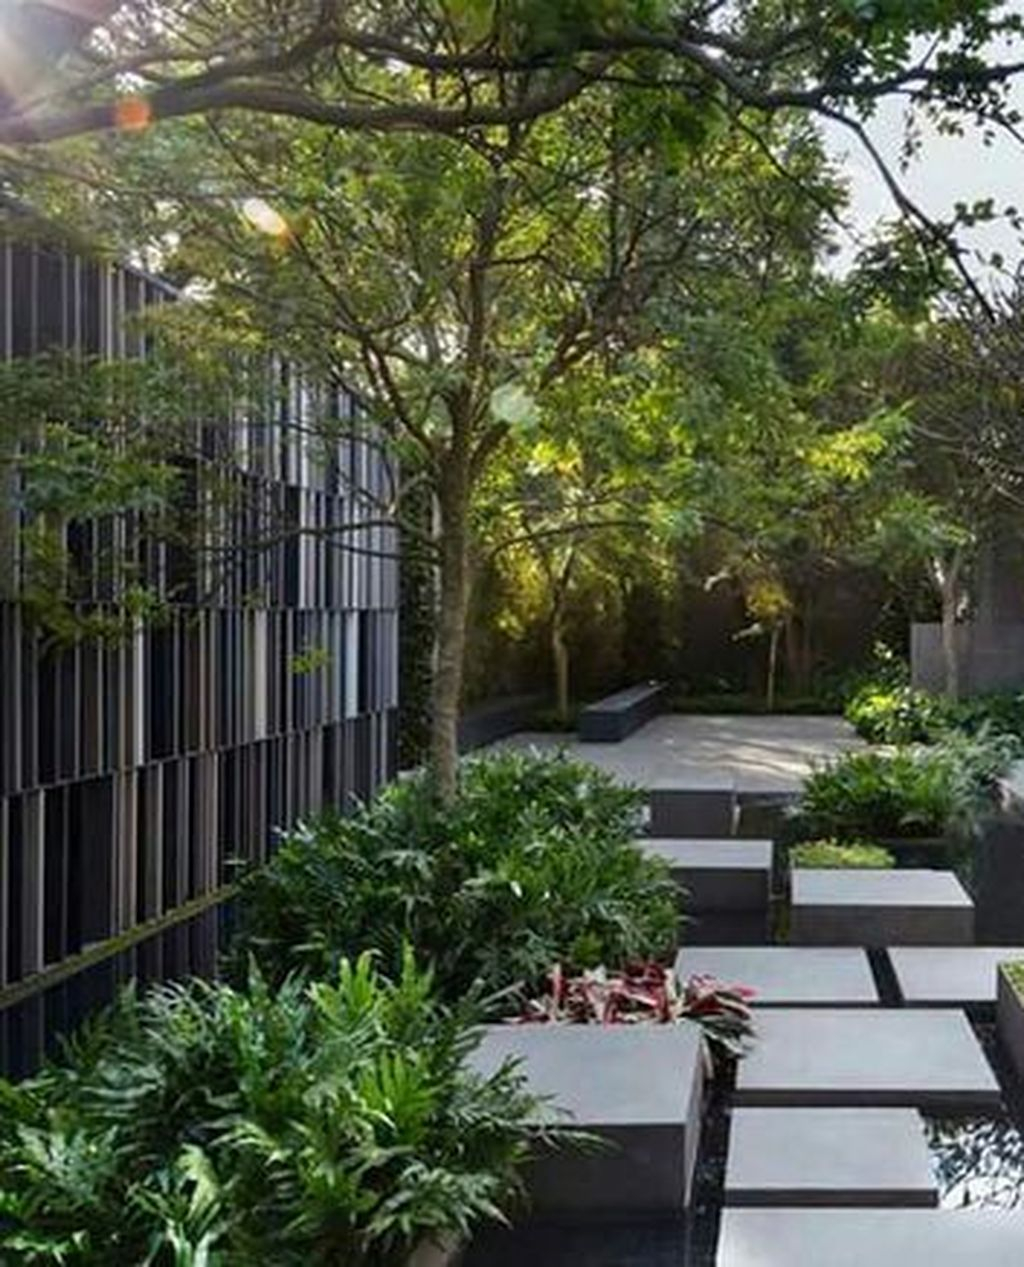 Meera Sky Garden House Modern Home Design Decor Ideas